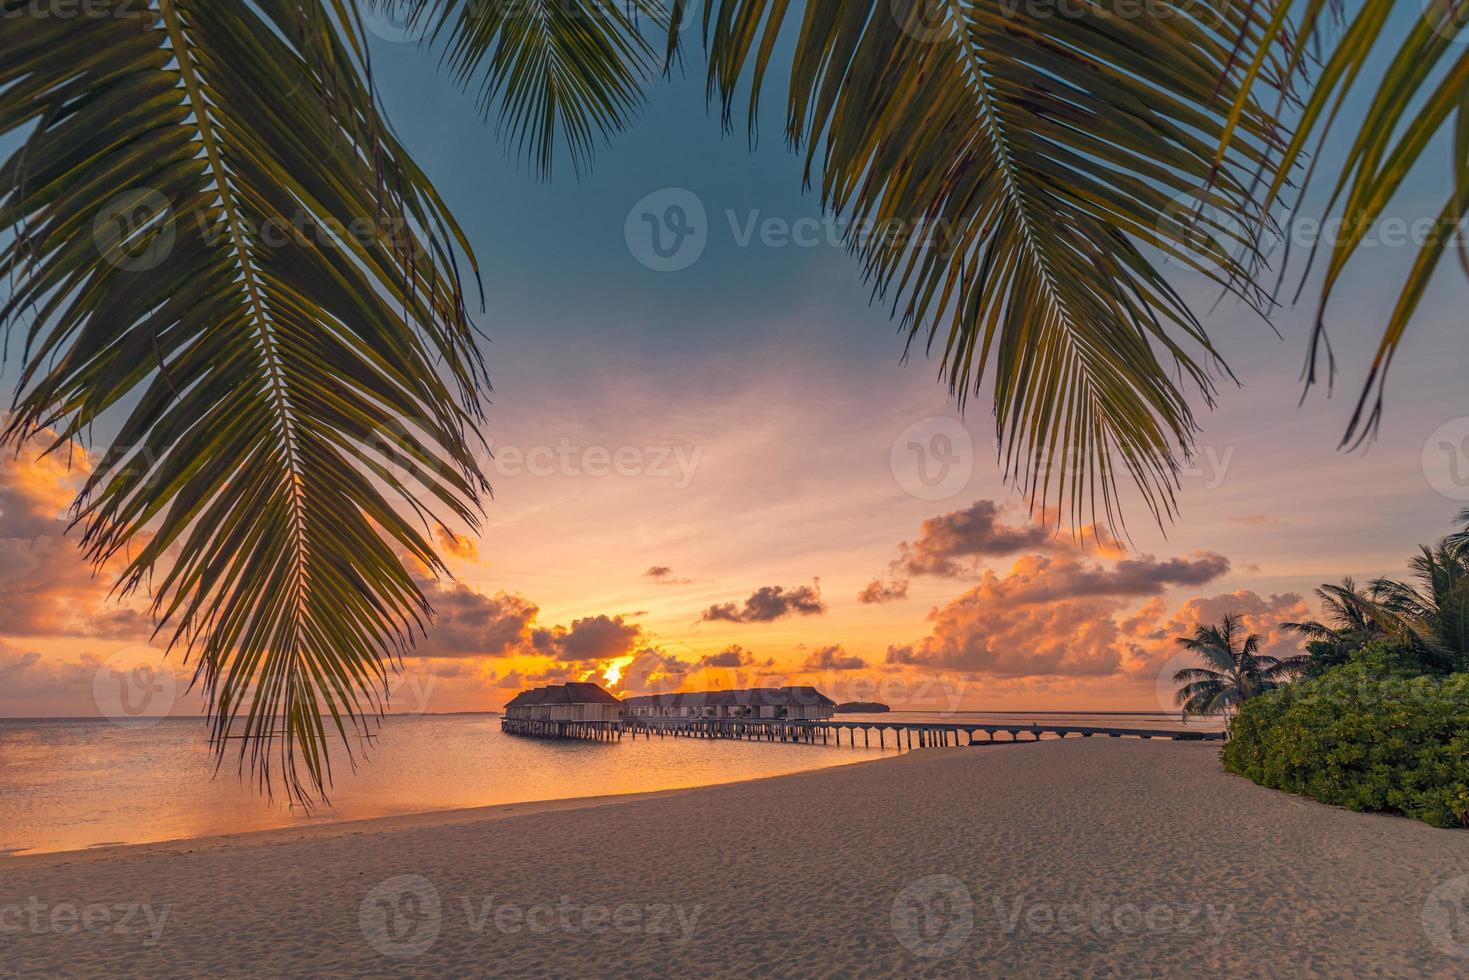 fantastique plage de l'île et ciel coucher de soleil avec des feuilles de palmier. paysage de plage tropicale de luxe, jetée en bois dans des villas sur pilotis, bungalows pittoresques incroyables. lieu de villégiature, paysage hôtelier exotique photo